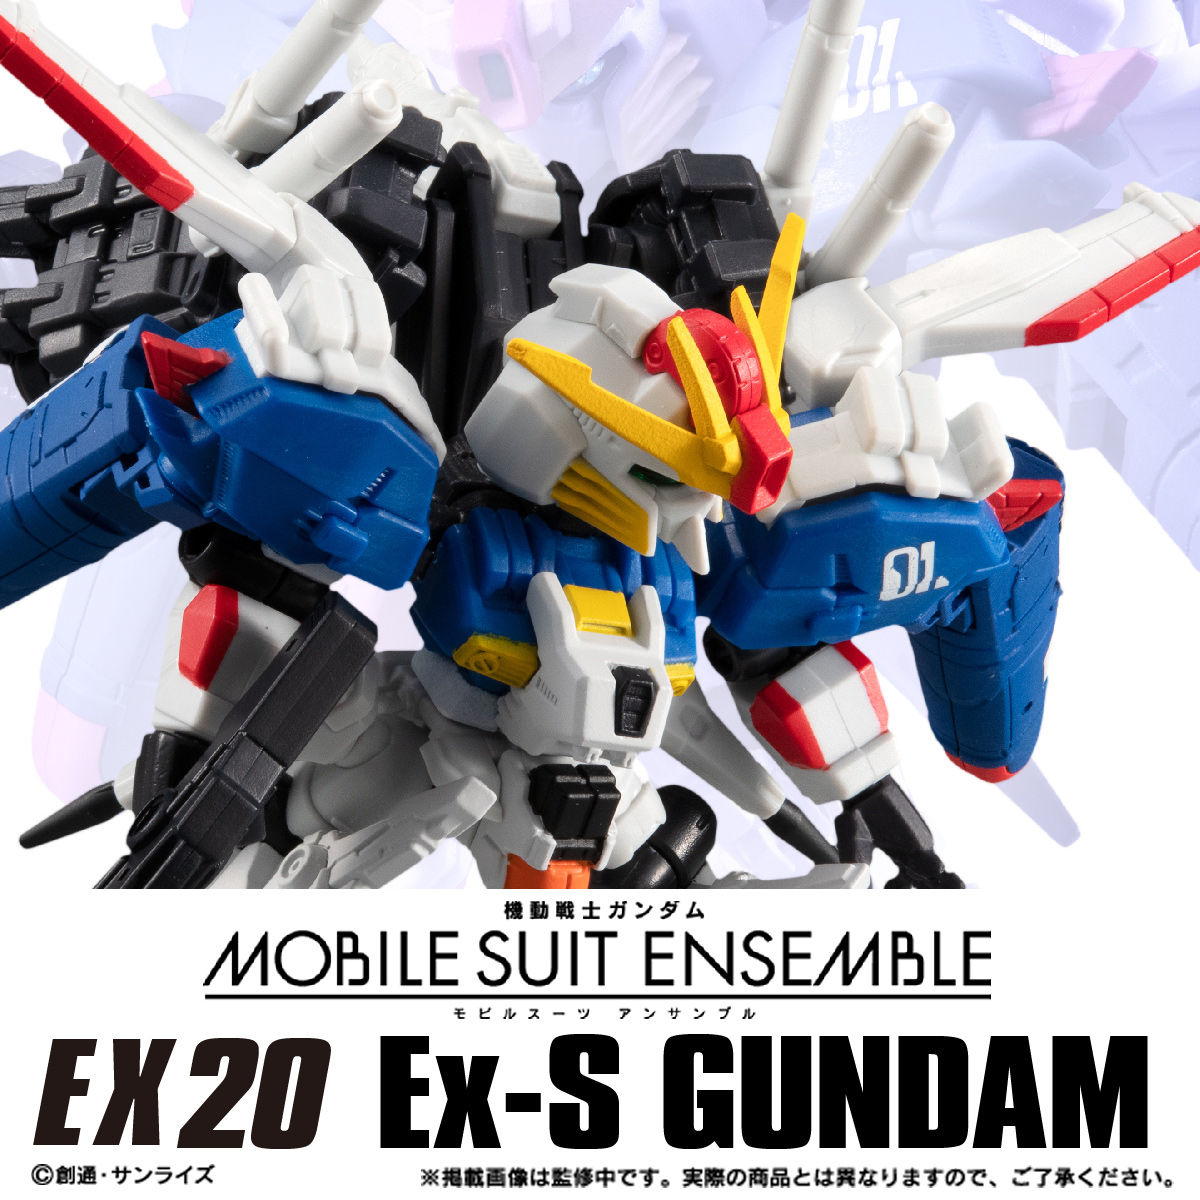 【限定販売】MOBILE SUIT ENSEMBLE『EX20 Ex‐Sガンダム』ガンダム・センチネル 完成品フィギュア-001